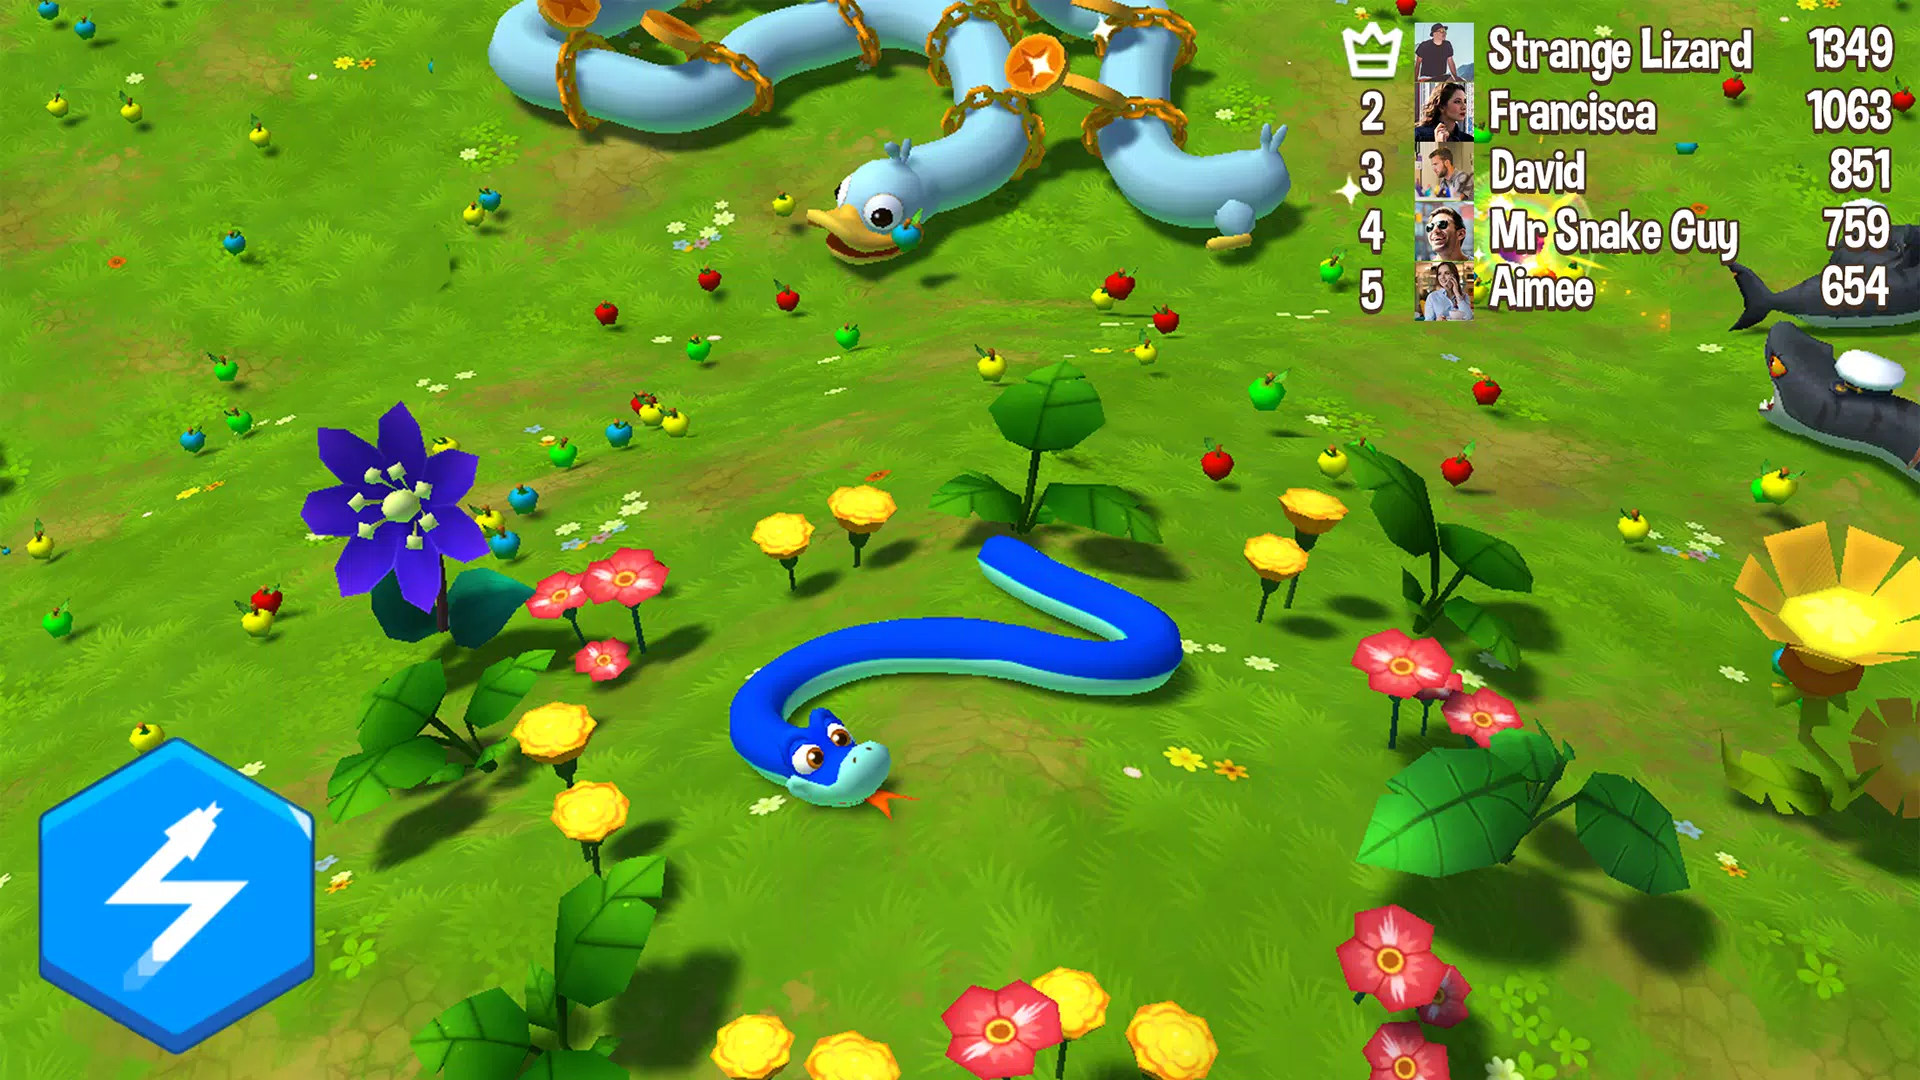 Snake Rivals - Novo Jogo de Snake em 3D - Download do APK para Android